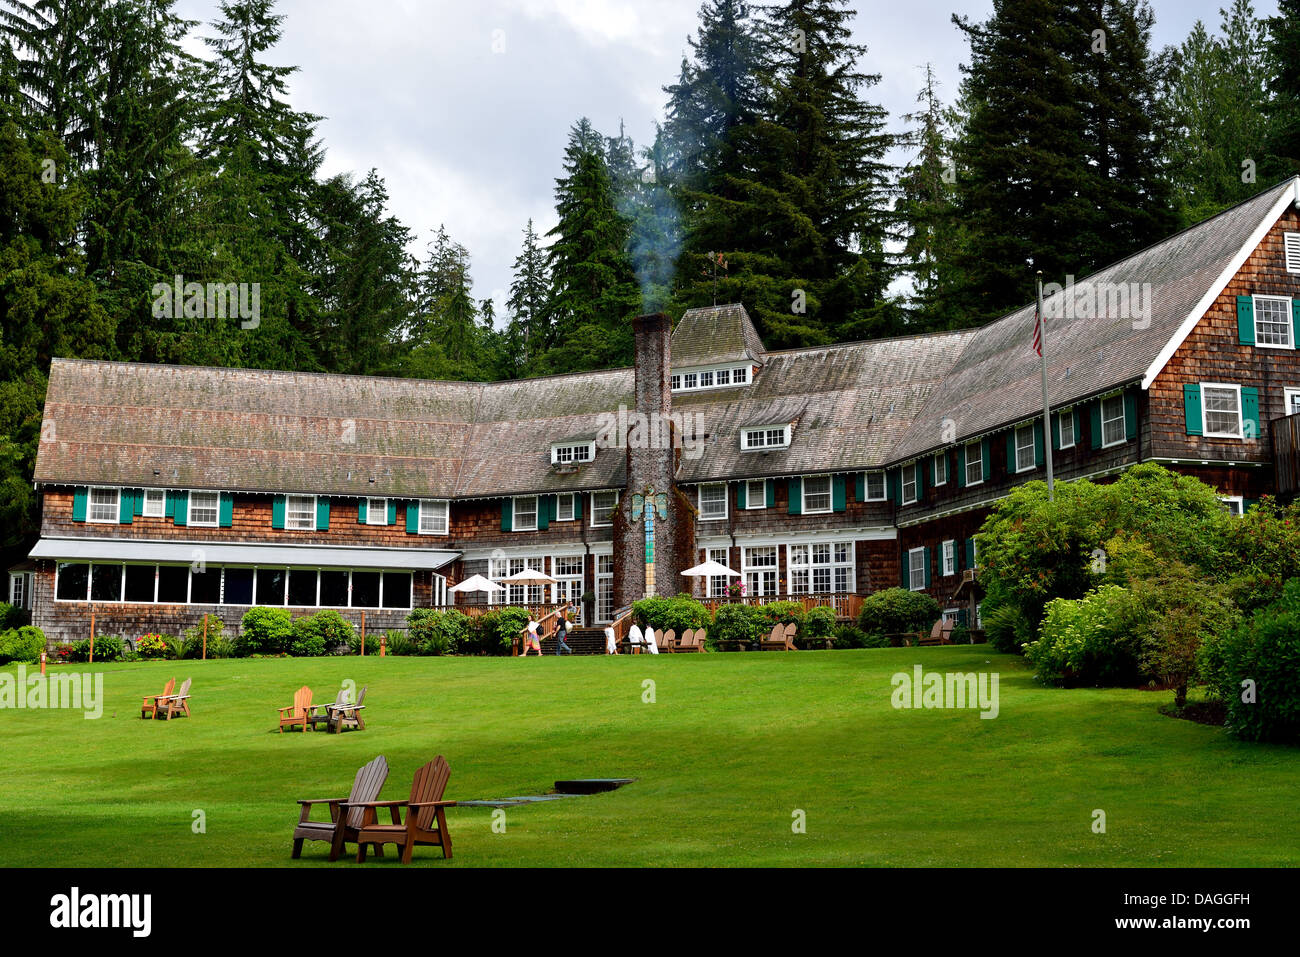 Historia de Lake Quinault Lodge. El Parque Nacional Olympic, Washington, Estados Unidos. Foto de stock